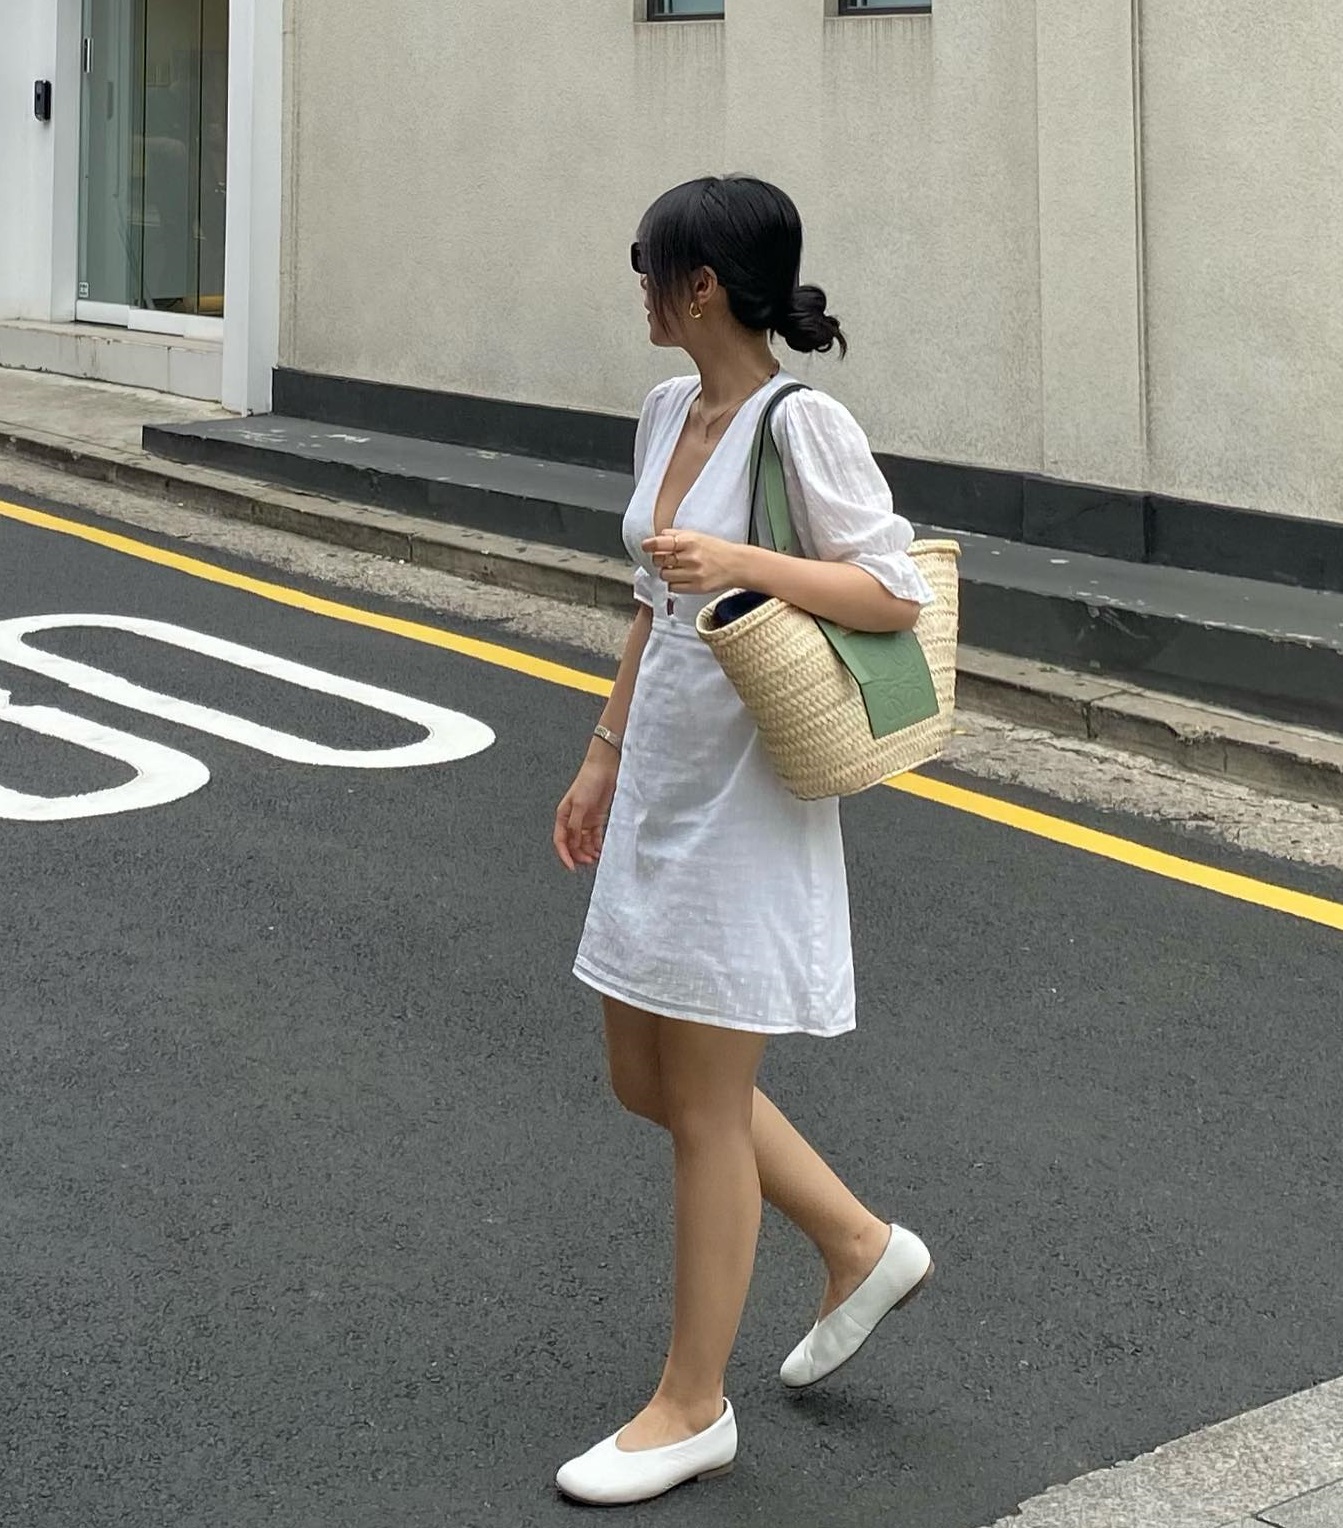 Cao 1m57, blogger Hà Trúc có 4 chiêu tôn dáng khi đi giày bệt-8